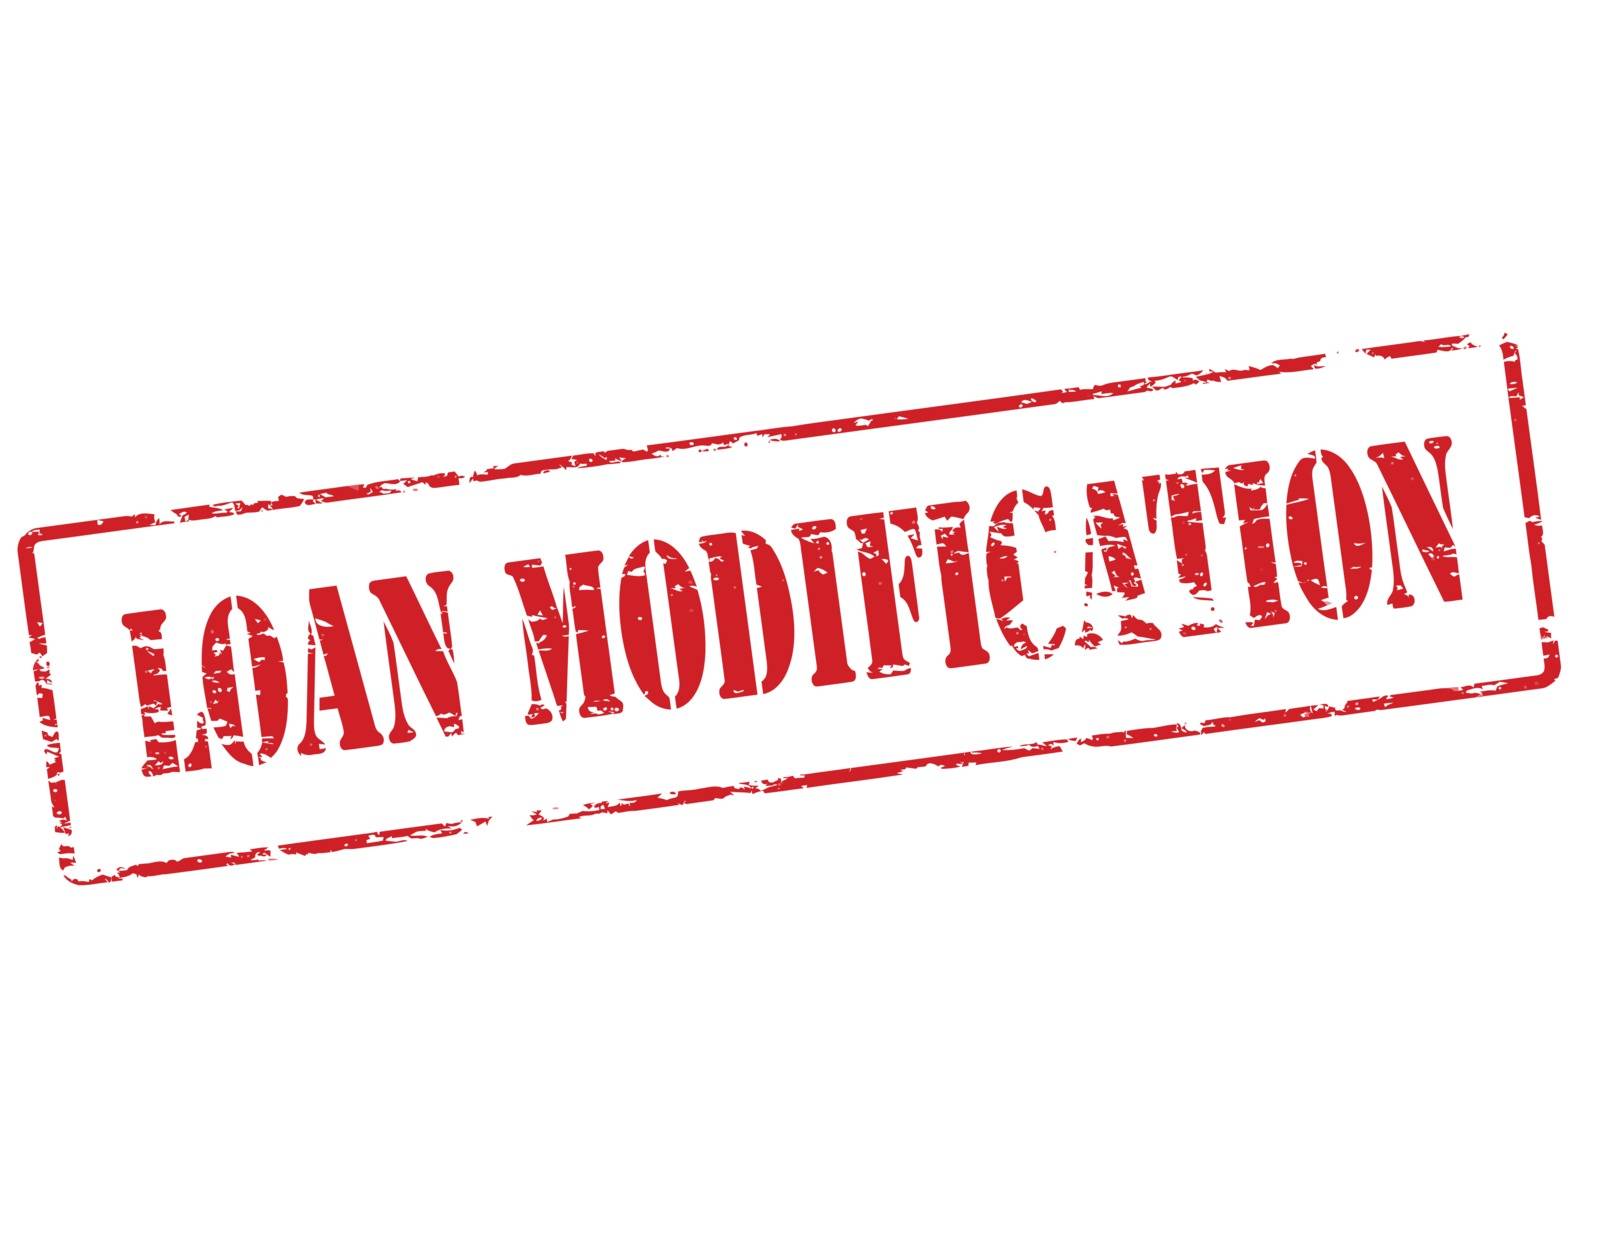 Loan modification by carmenbobo